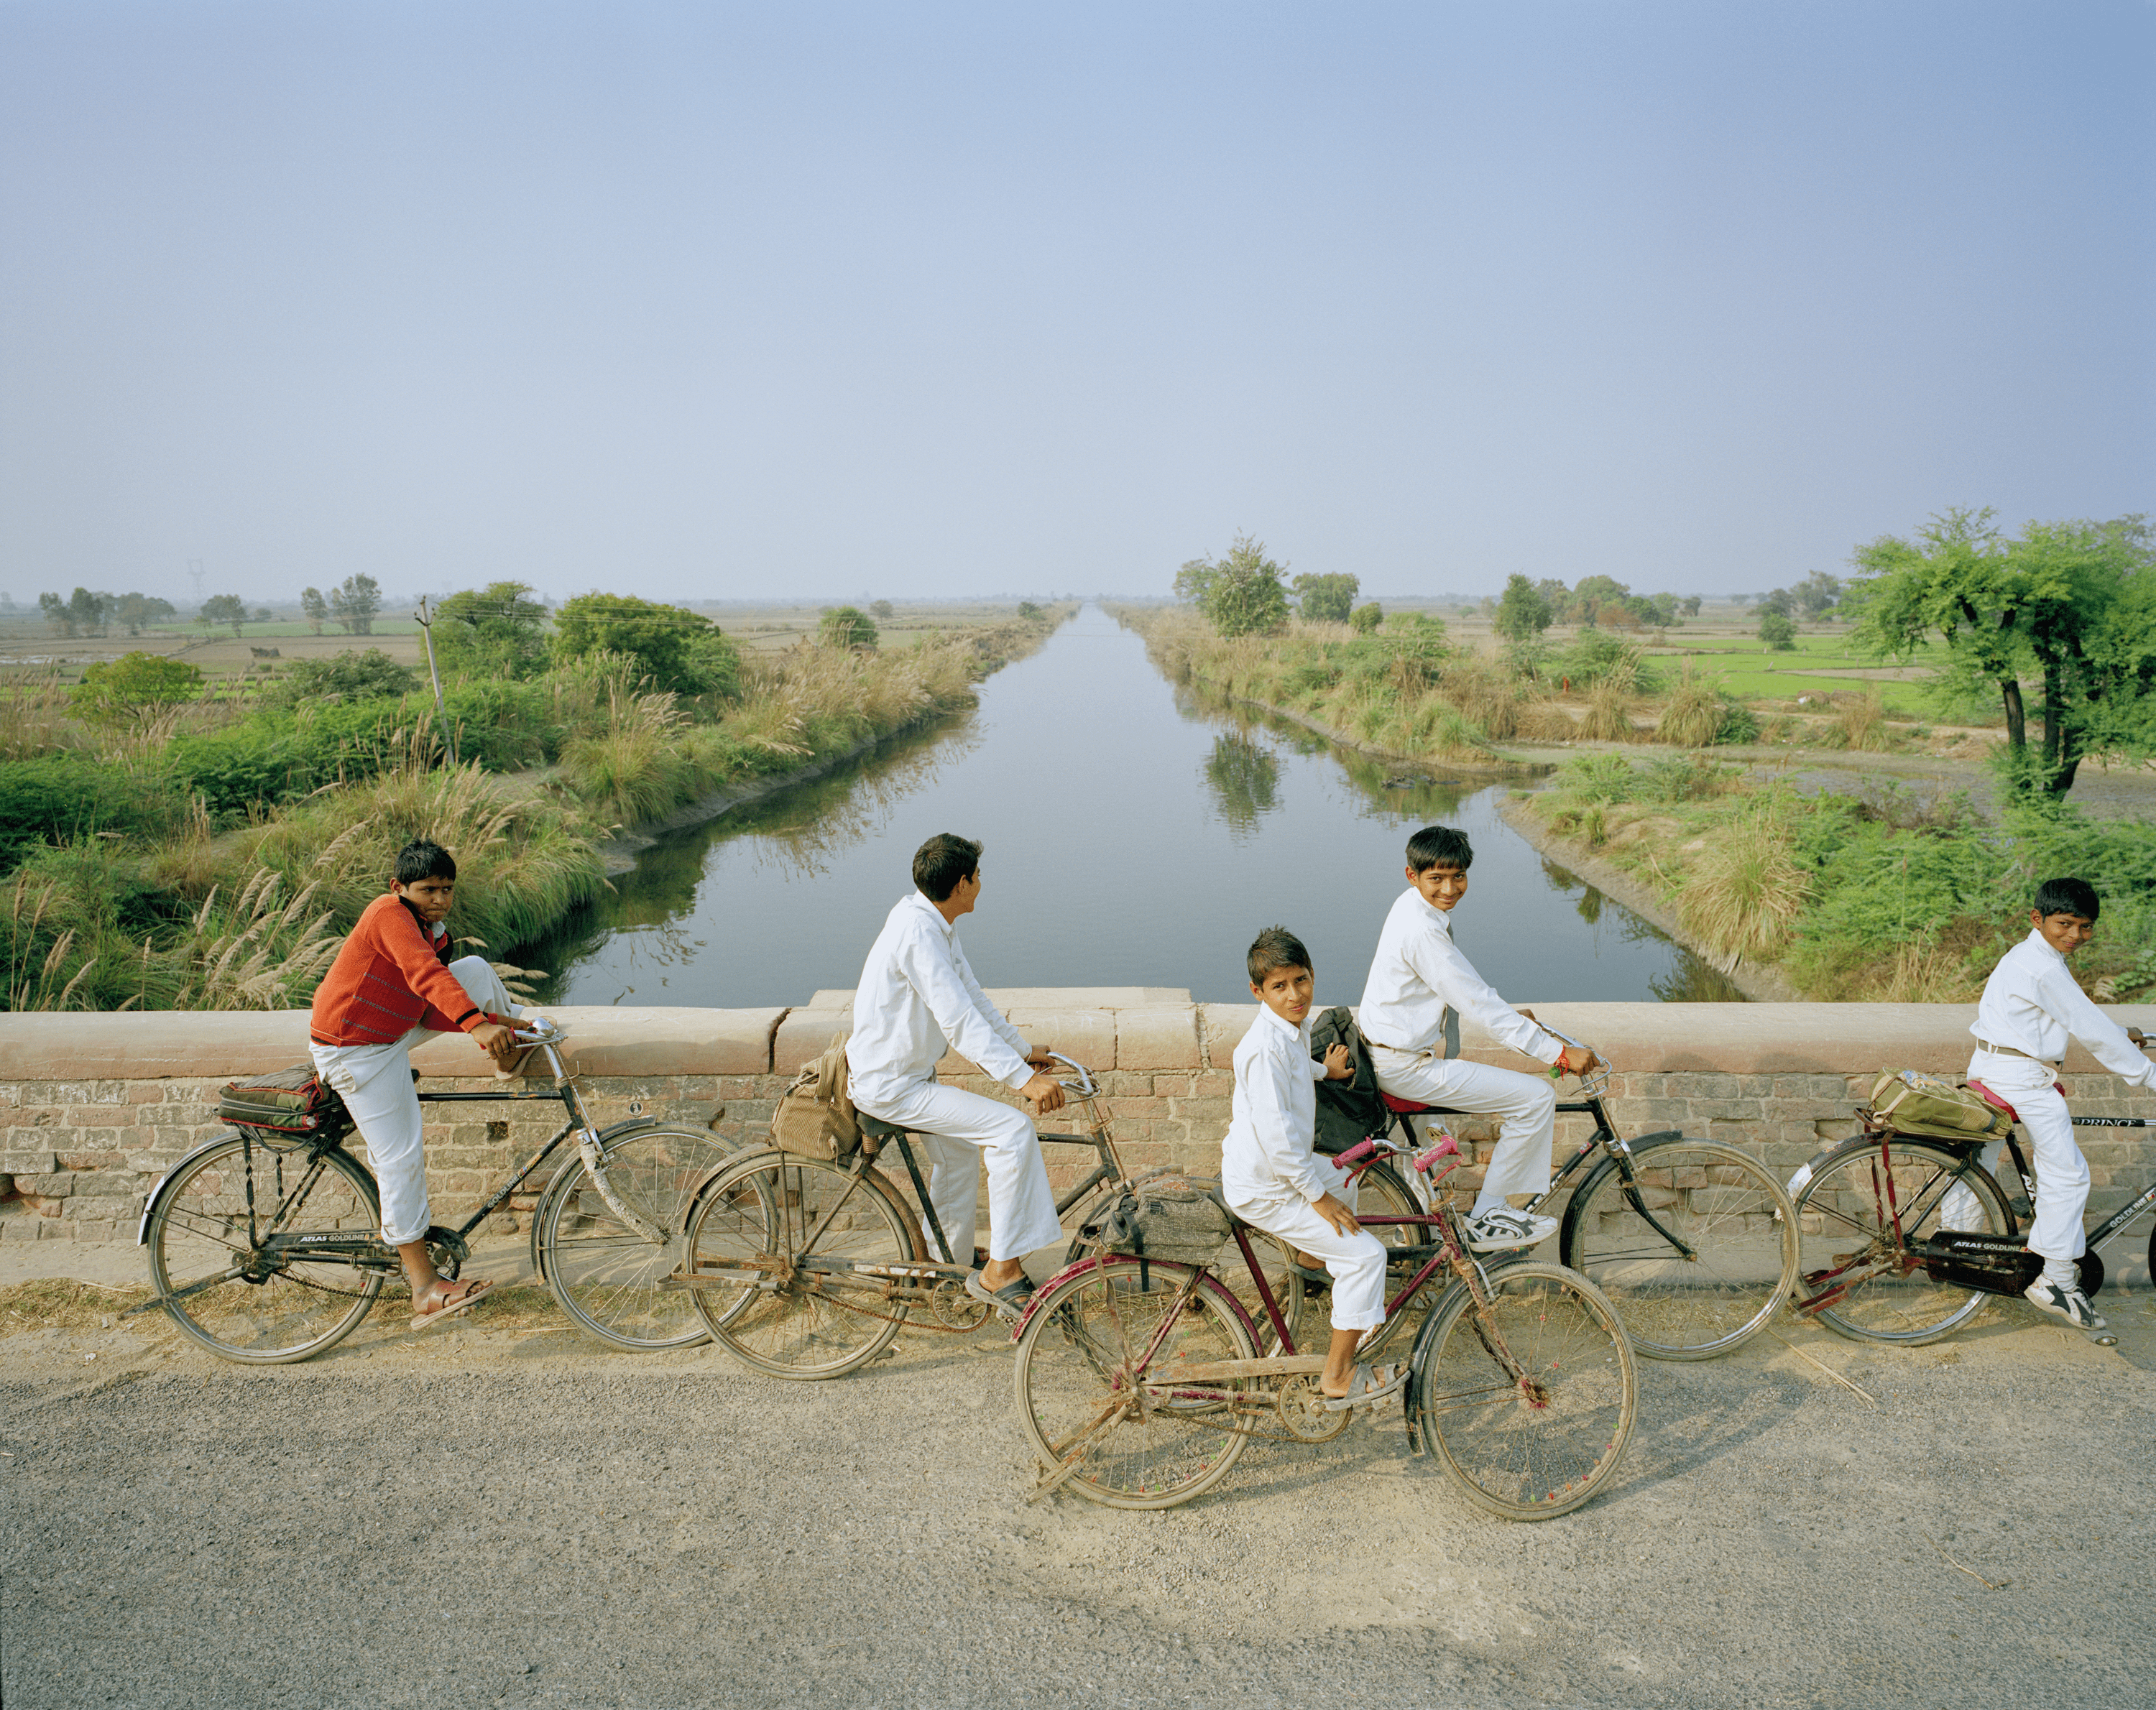 Schoolchildren on their way home in Vraja, Uttar Pradesh #1/8